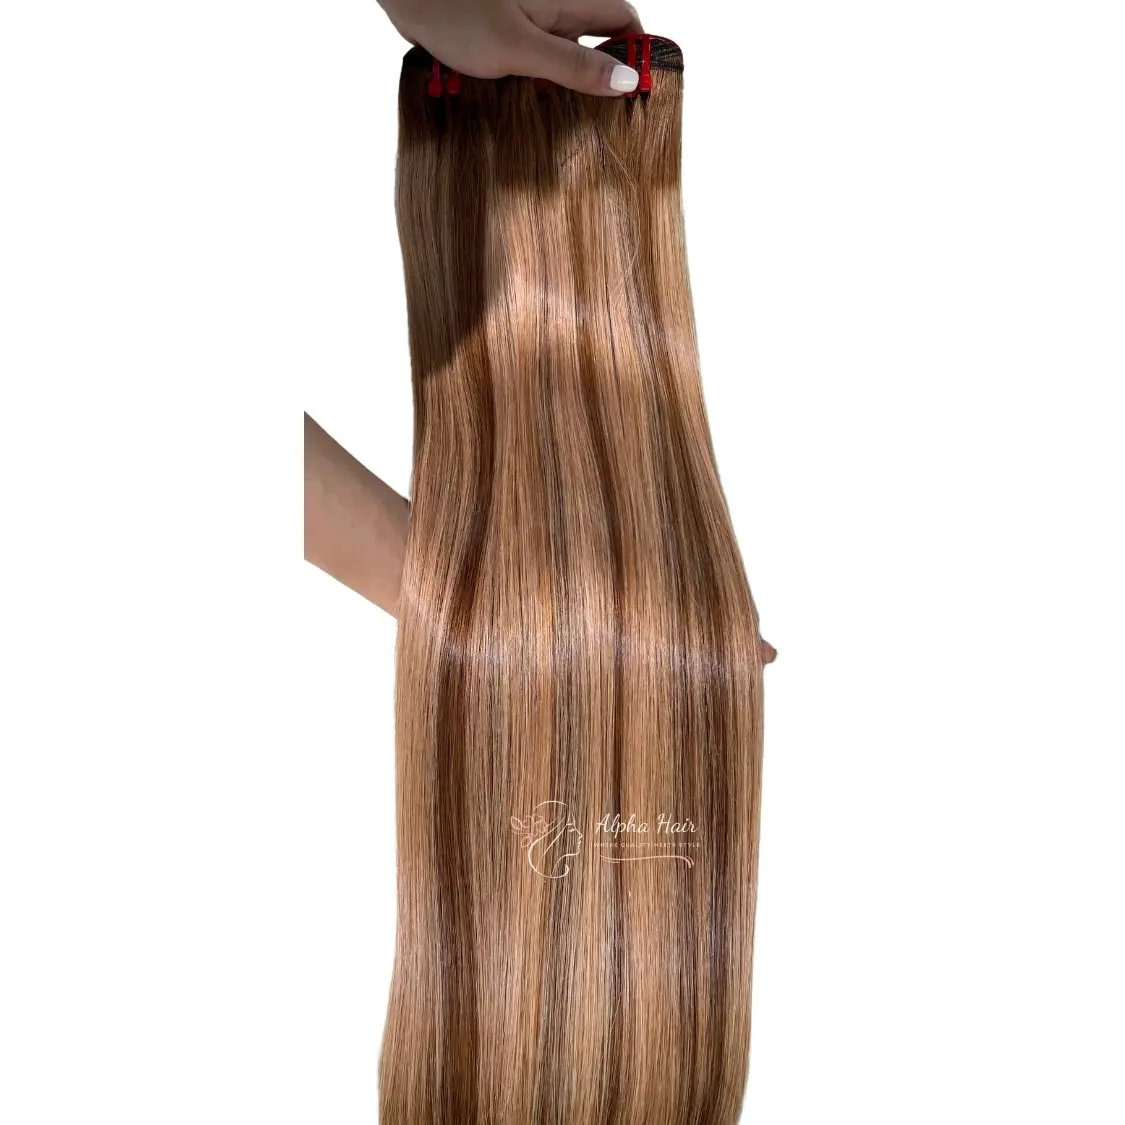 הזול ביותר משיי עצם משולבת ישר ללא הסתבכות תוספות שיער מלא שזירה חזיתית שיער אדם פאות חזיתיות שיער וייטנאם